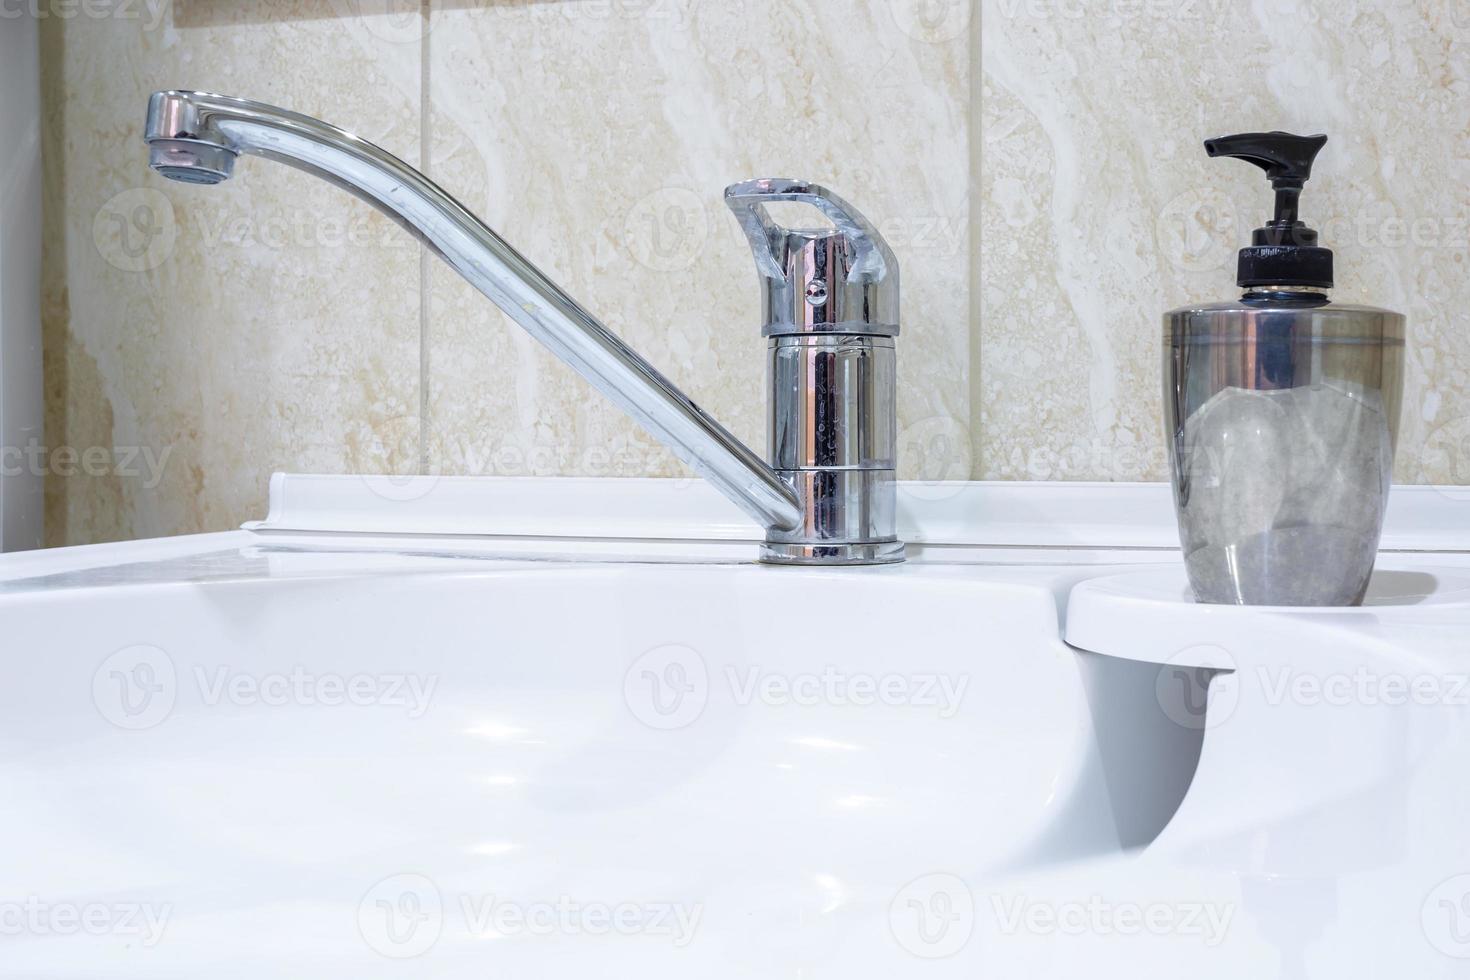 lavandino del rubinetto dell'acqua con rubinetto nel bagno soppalcato costoso. dettaglio di una cabina doccia ad angolo con attacco doccia a parete foto